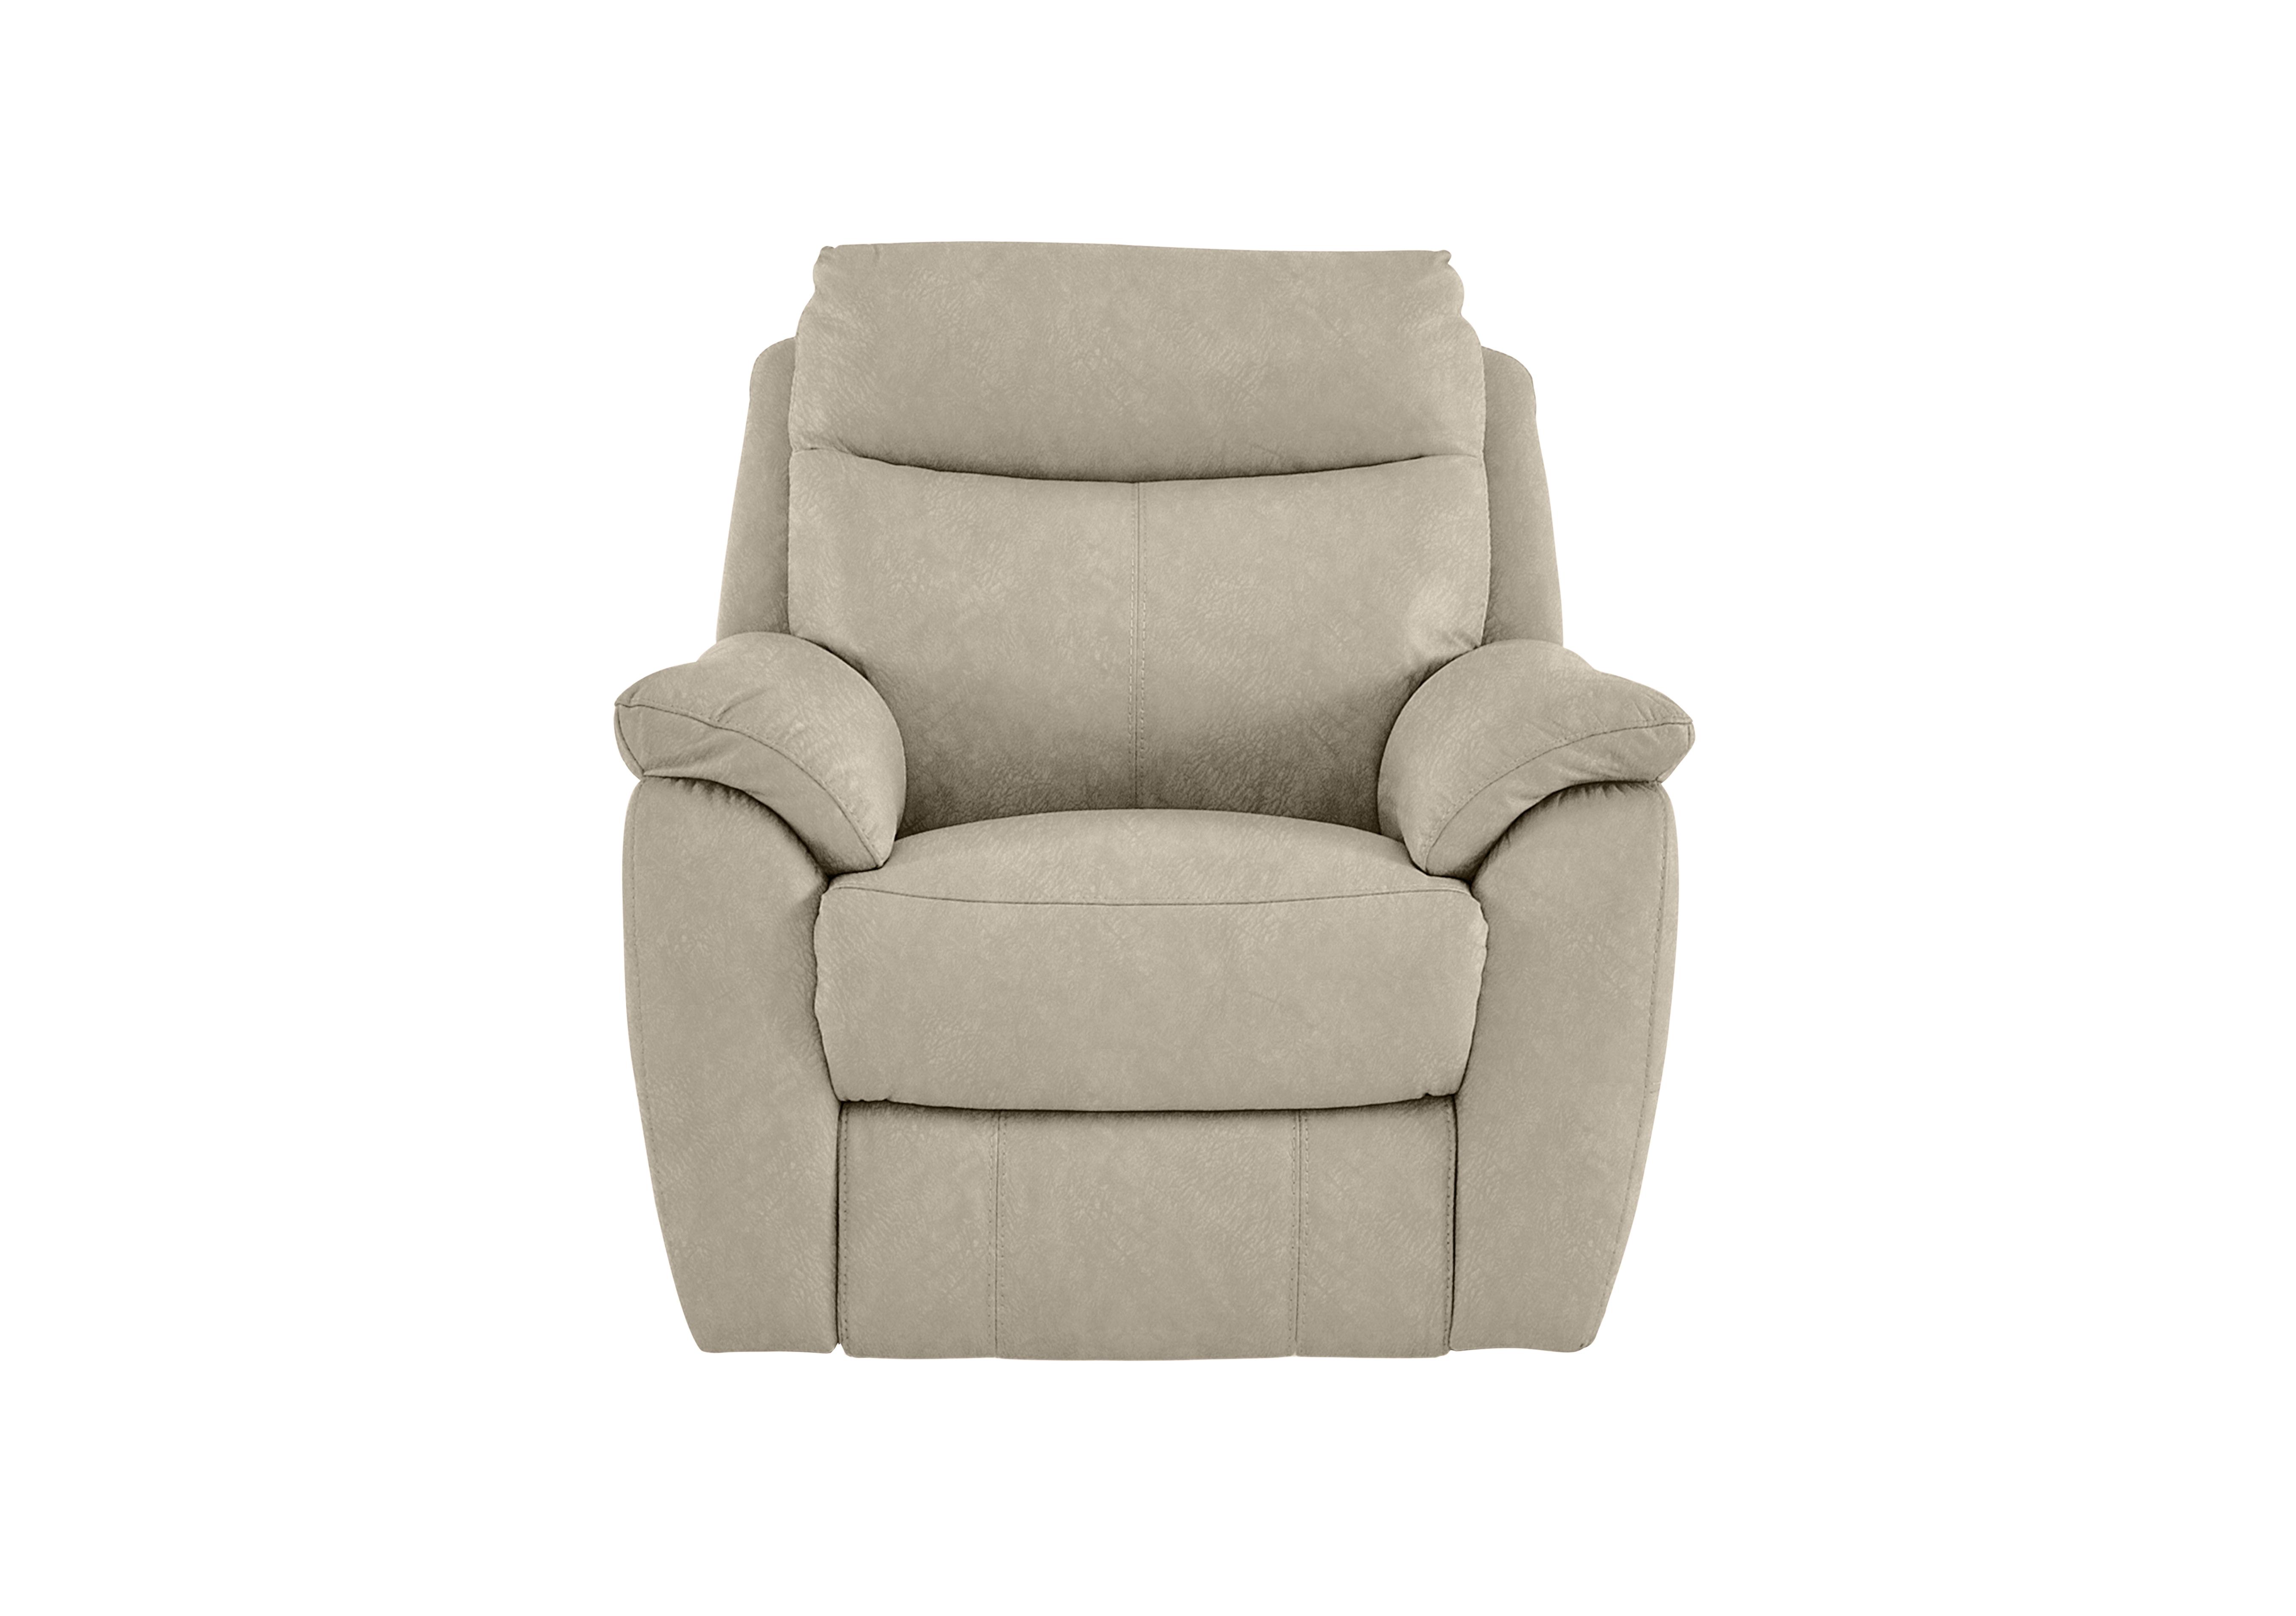 Snug Fabric Armchair in Bfa-Bnn-R26 Fv2 Cream on Furniture Village